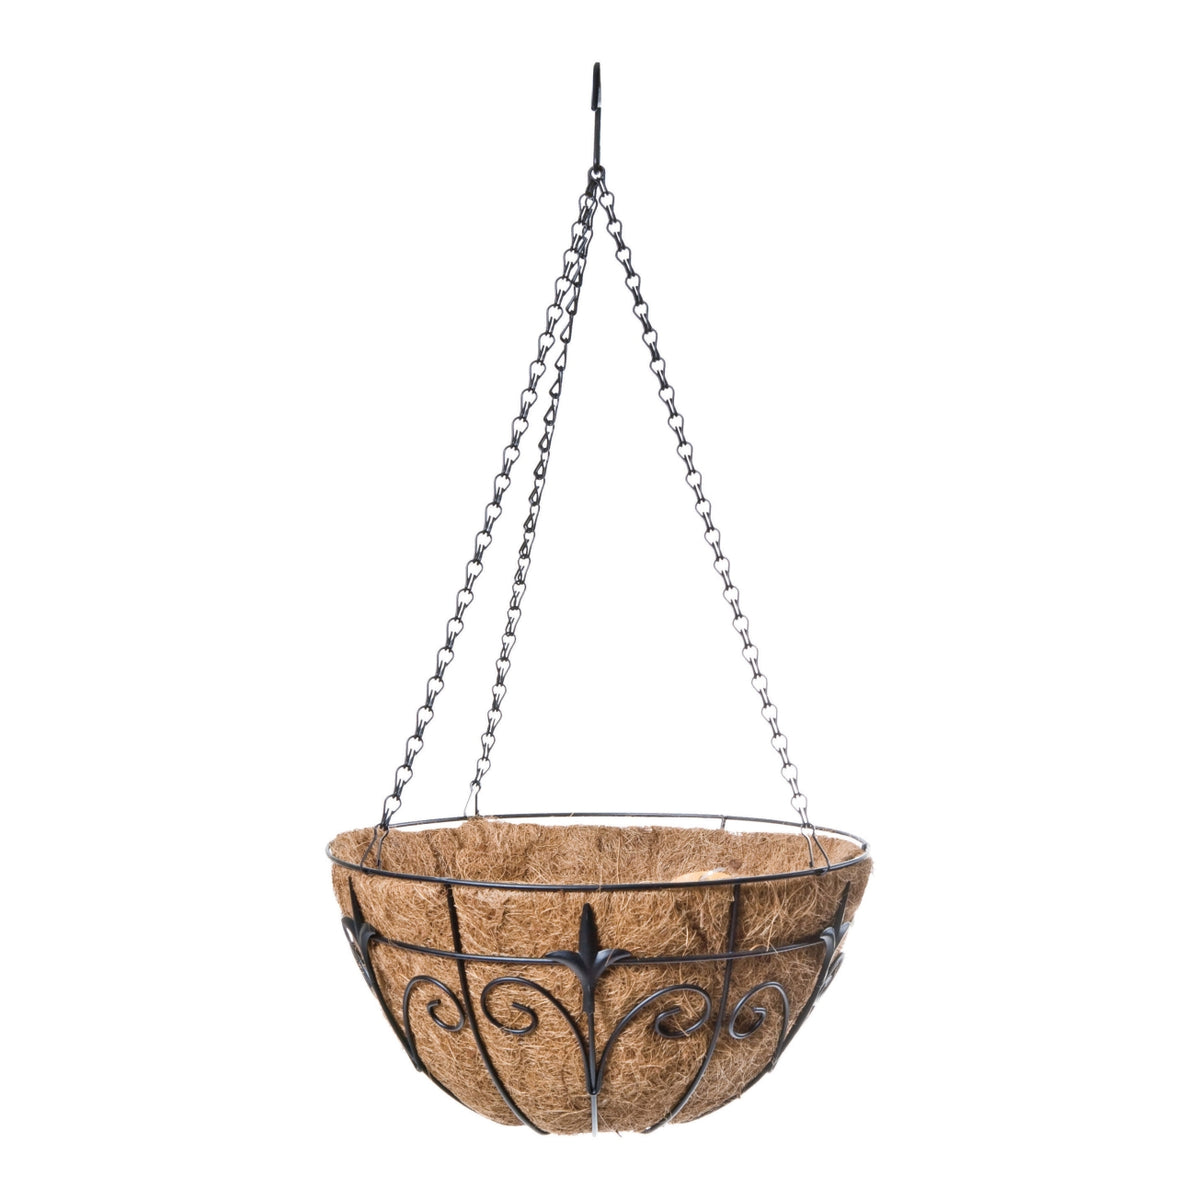 Panacea 88512 Hanging Basket With Finial Design,14"